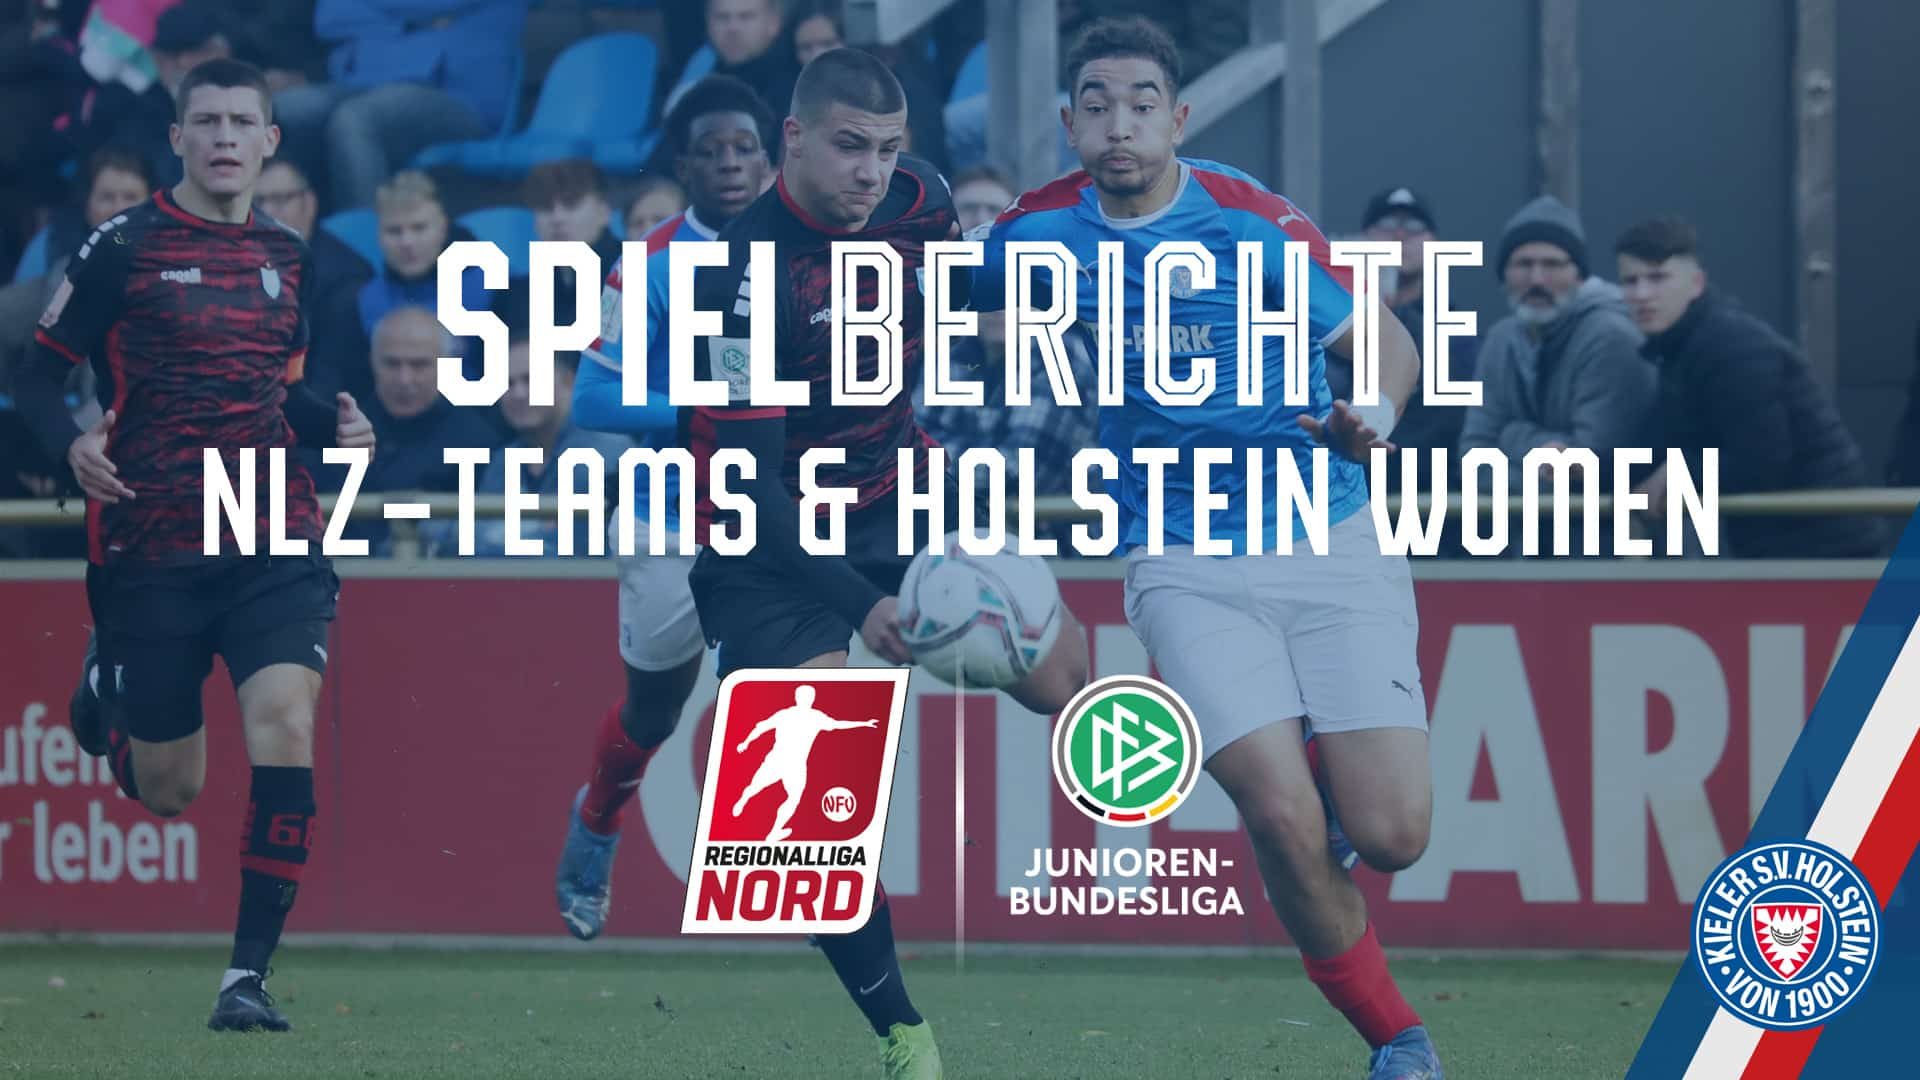 20211031 Spielbericht_Facebook U19 - Viktoria Berlin Chemnitz - U17 Werder II - Holstein Women